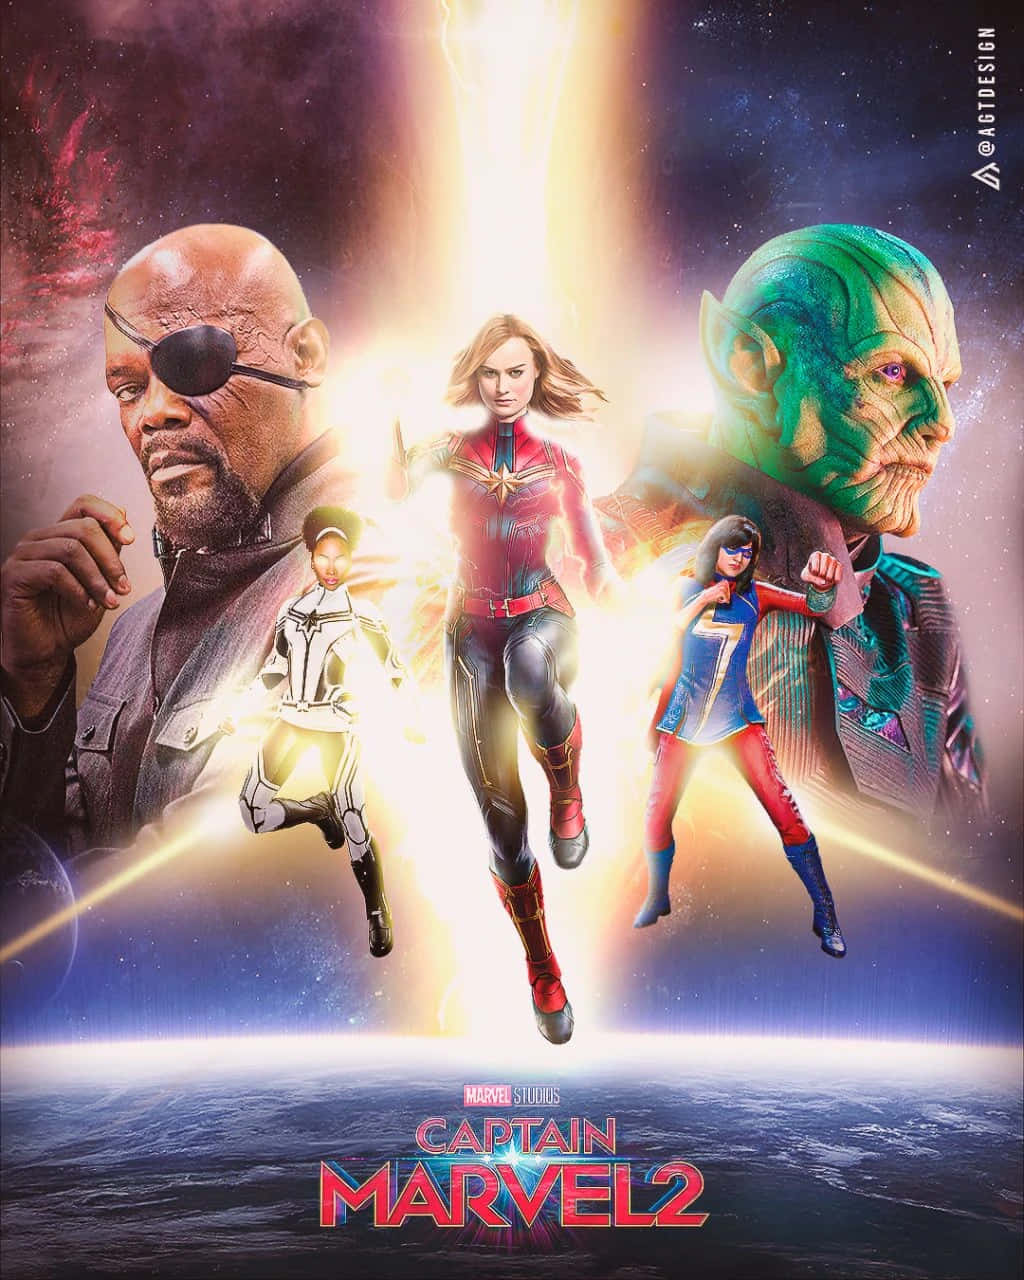 Styrkelseaf Kvinder På Tværs Af Universer: Captain Marvel 2 Wallpaper